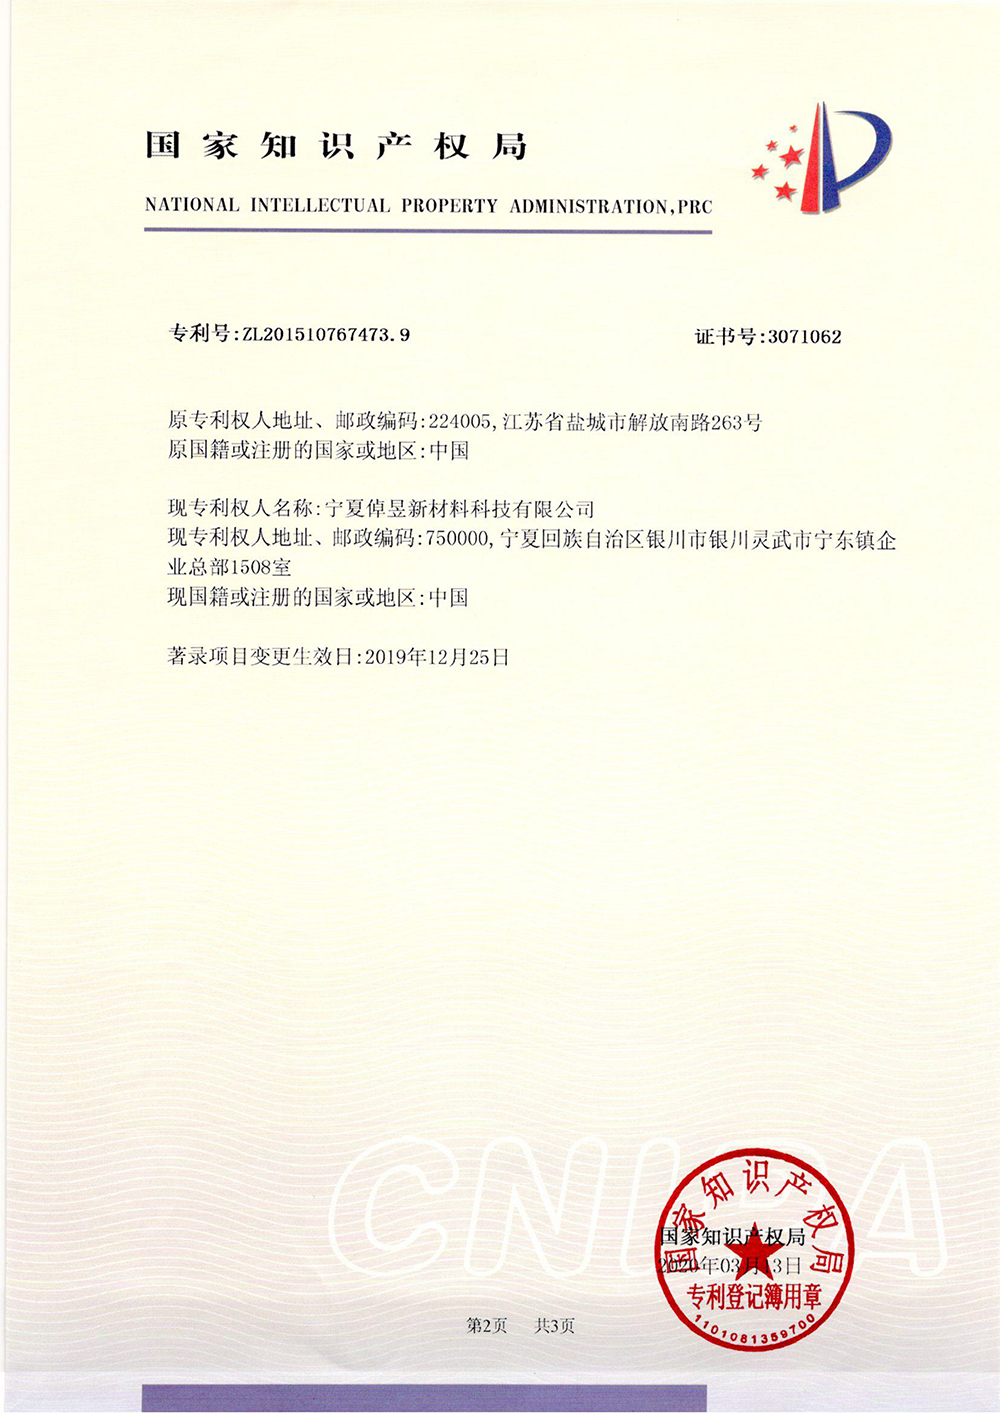 甲基咪唑的制备方法-专利部登记薄-3_上海浩登材料股份有限公司